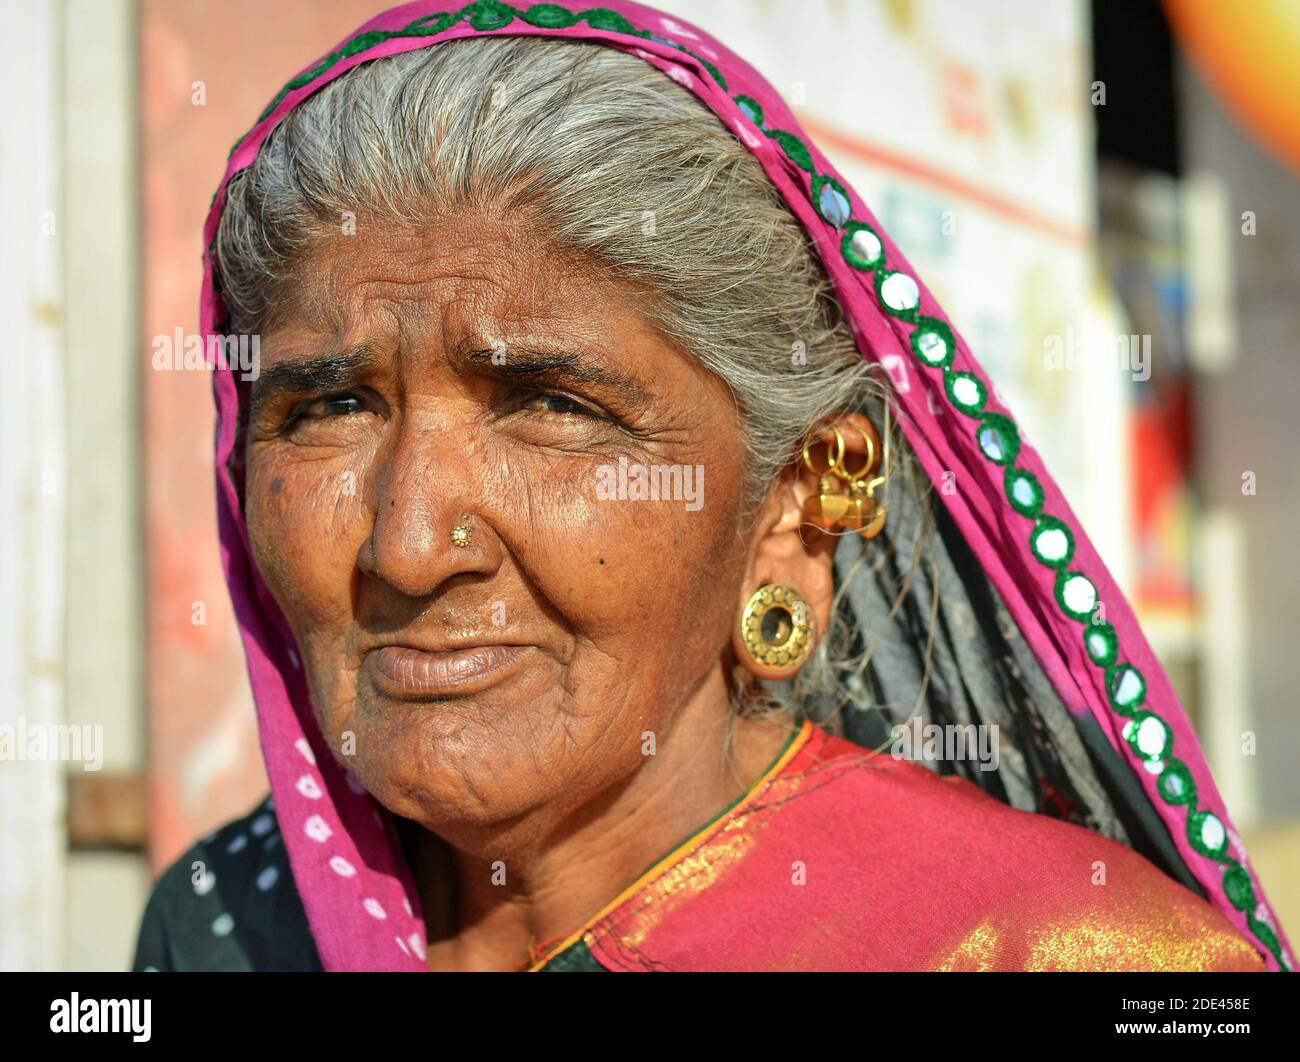 Alte indische Gujarati Frau mit aufwendigen Ohrschmuck (Ohrläppchen, Ohrhelix Piercings) und traditionellen Kopftuch (Dupatta) Posen für die Kamera. Stockfoto